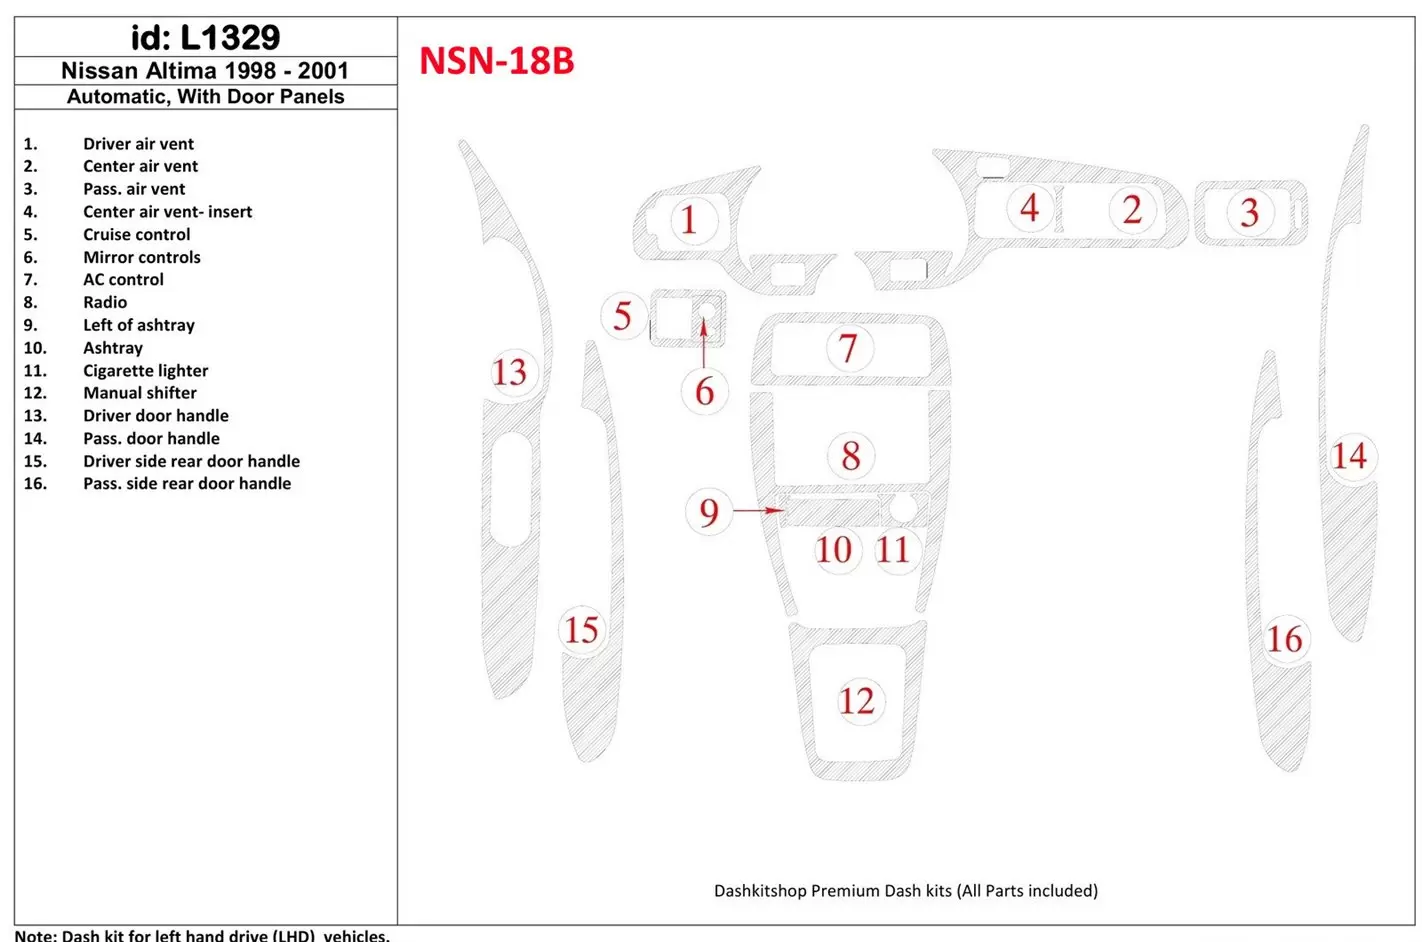 Nissan Altima 1998-2001 Manual Gearbox, With Door panels, 16 Parts set Decor de carlinga su interior